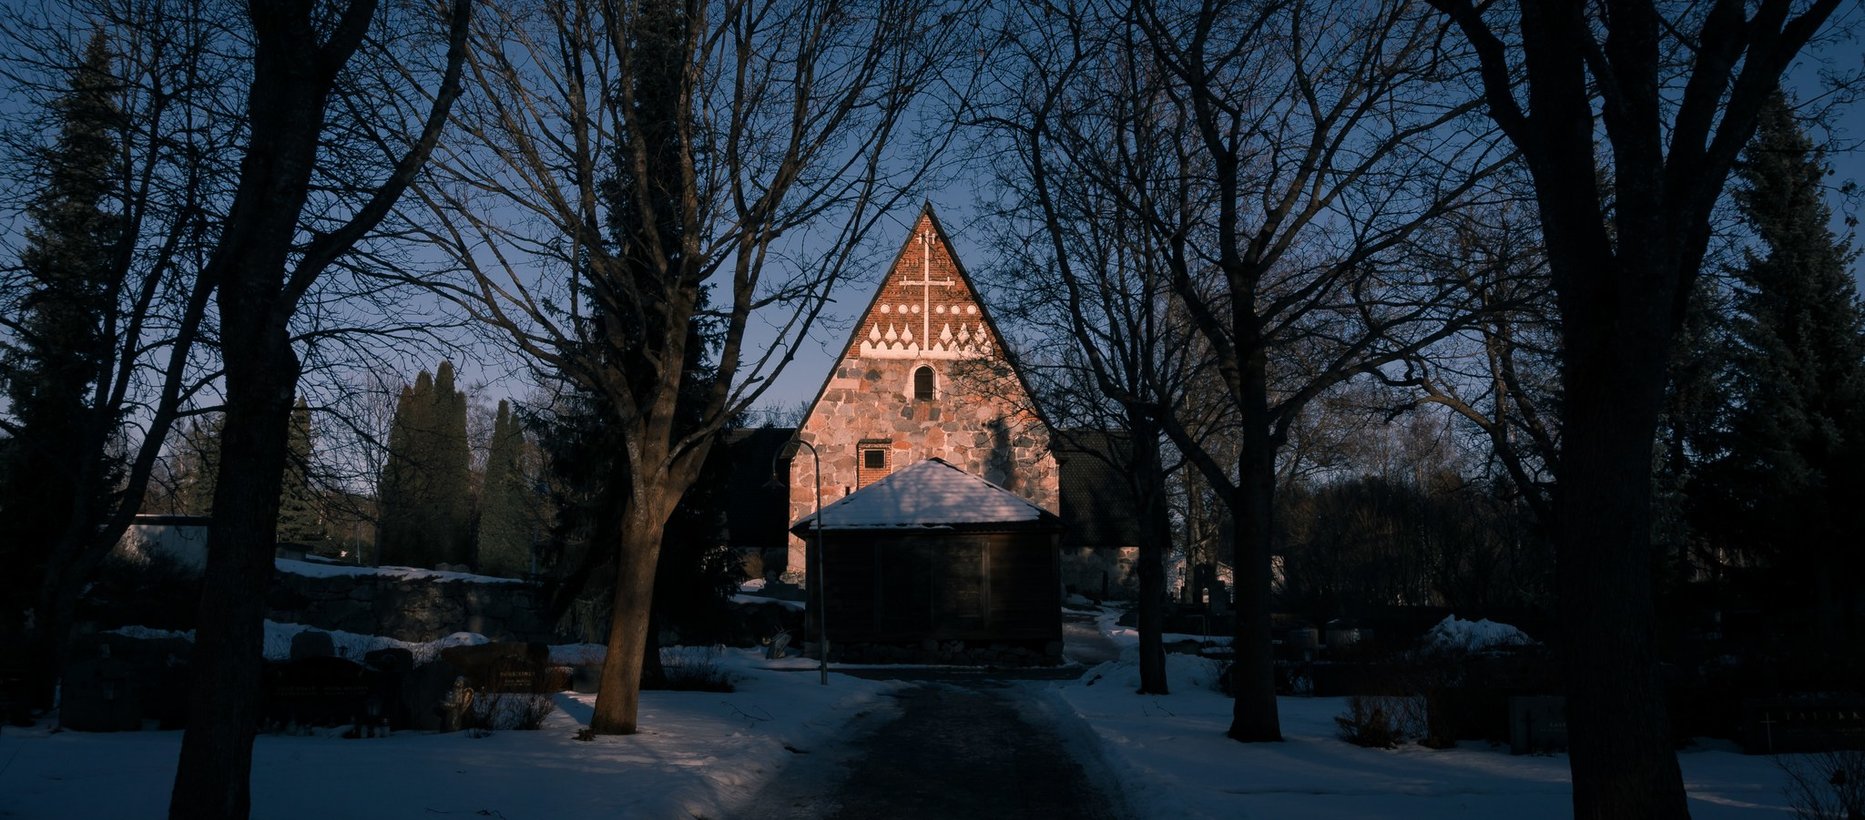 Vanajan kirkko lännestä kuvattuna, länsipääty näkyy valaistuna lumettoman ja mustan ympäristön keskeltä.